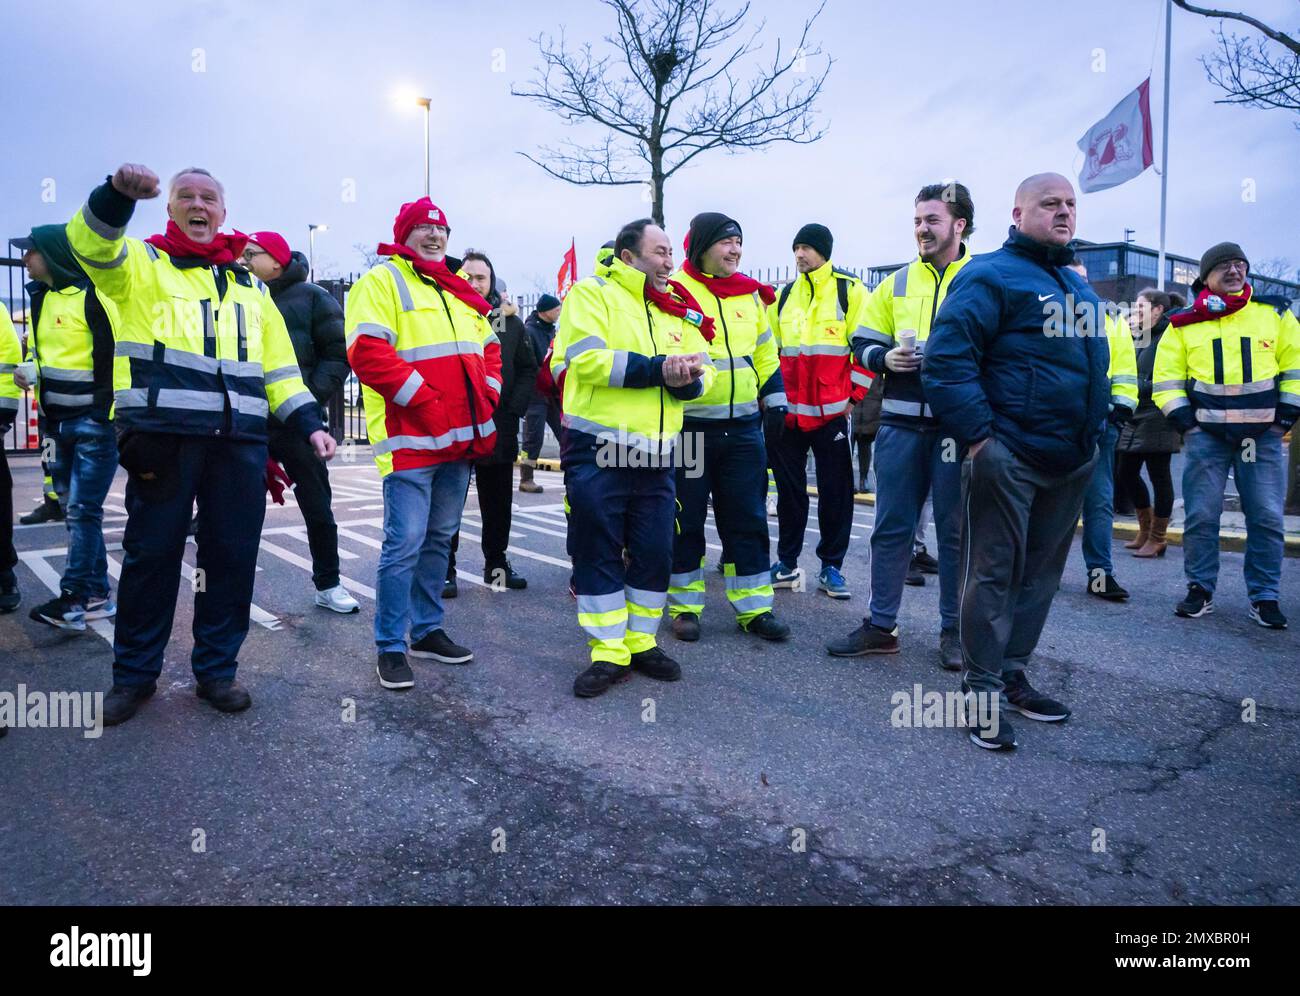 UTRECHT - Mitarbeiter der Stadtreinigung in der Gemeinde Utrecht streiken nach einem besseren Tarifvertrag. Die Straßenkehrer, Müllsammler und die Leute, die die Kanäle sauber halten, haben wieder aufgehört zu arbeiten. ANPANP JEROEN JUMELET niederlande raus - belgien raus Stockfoto